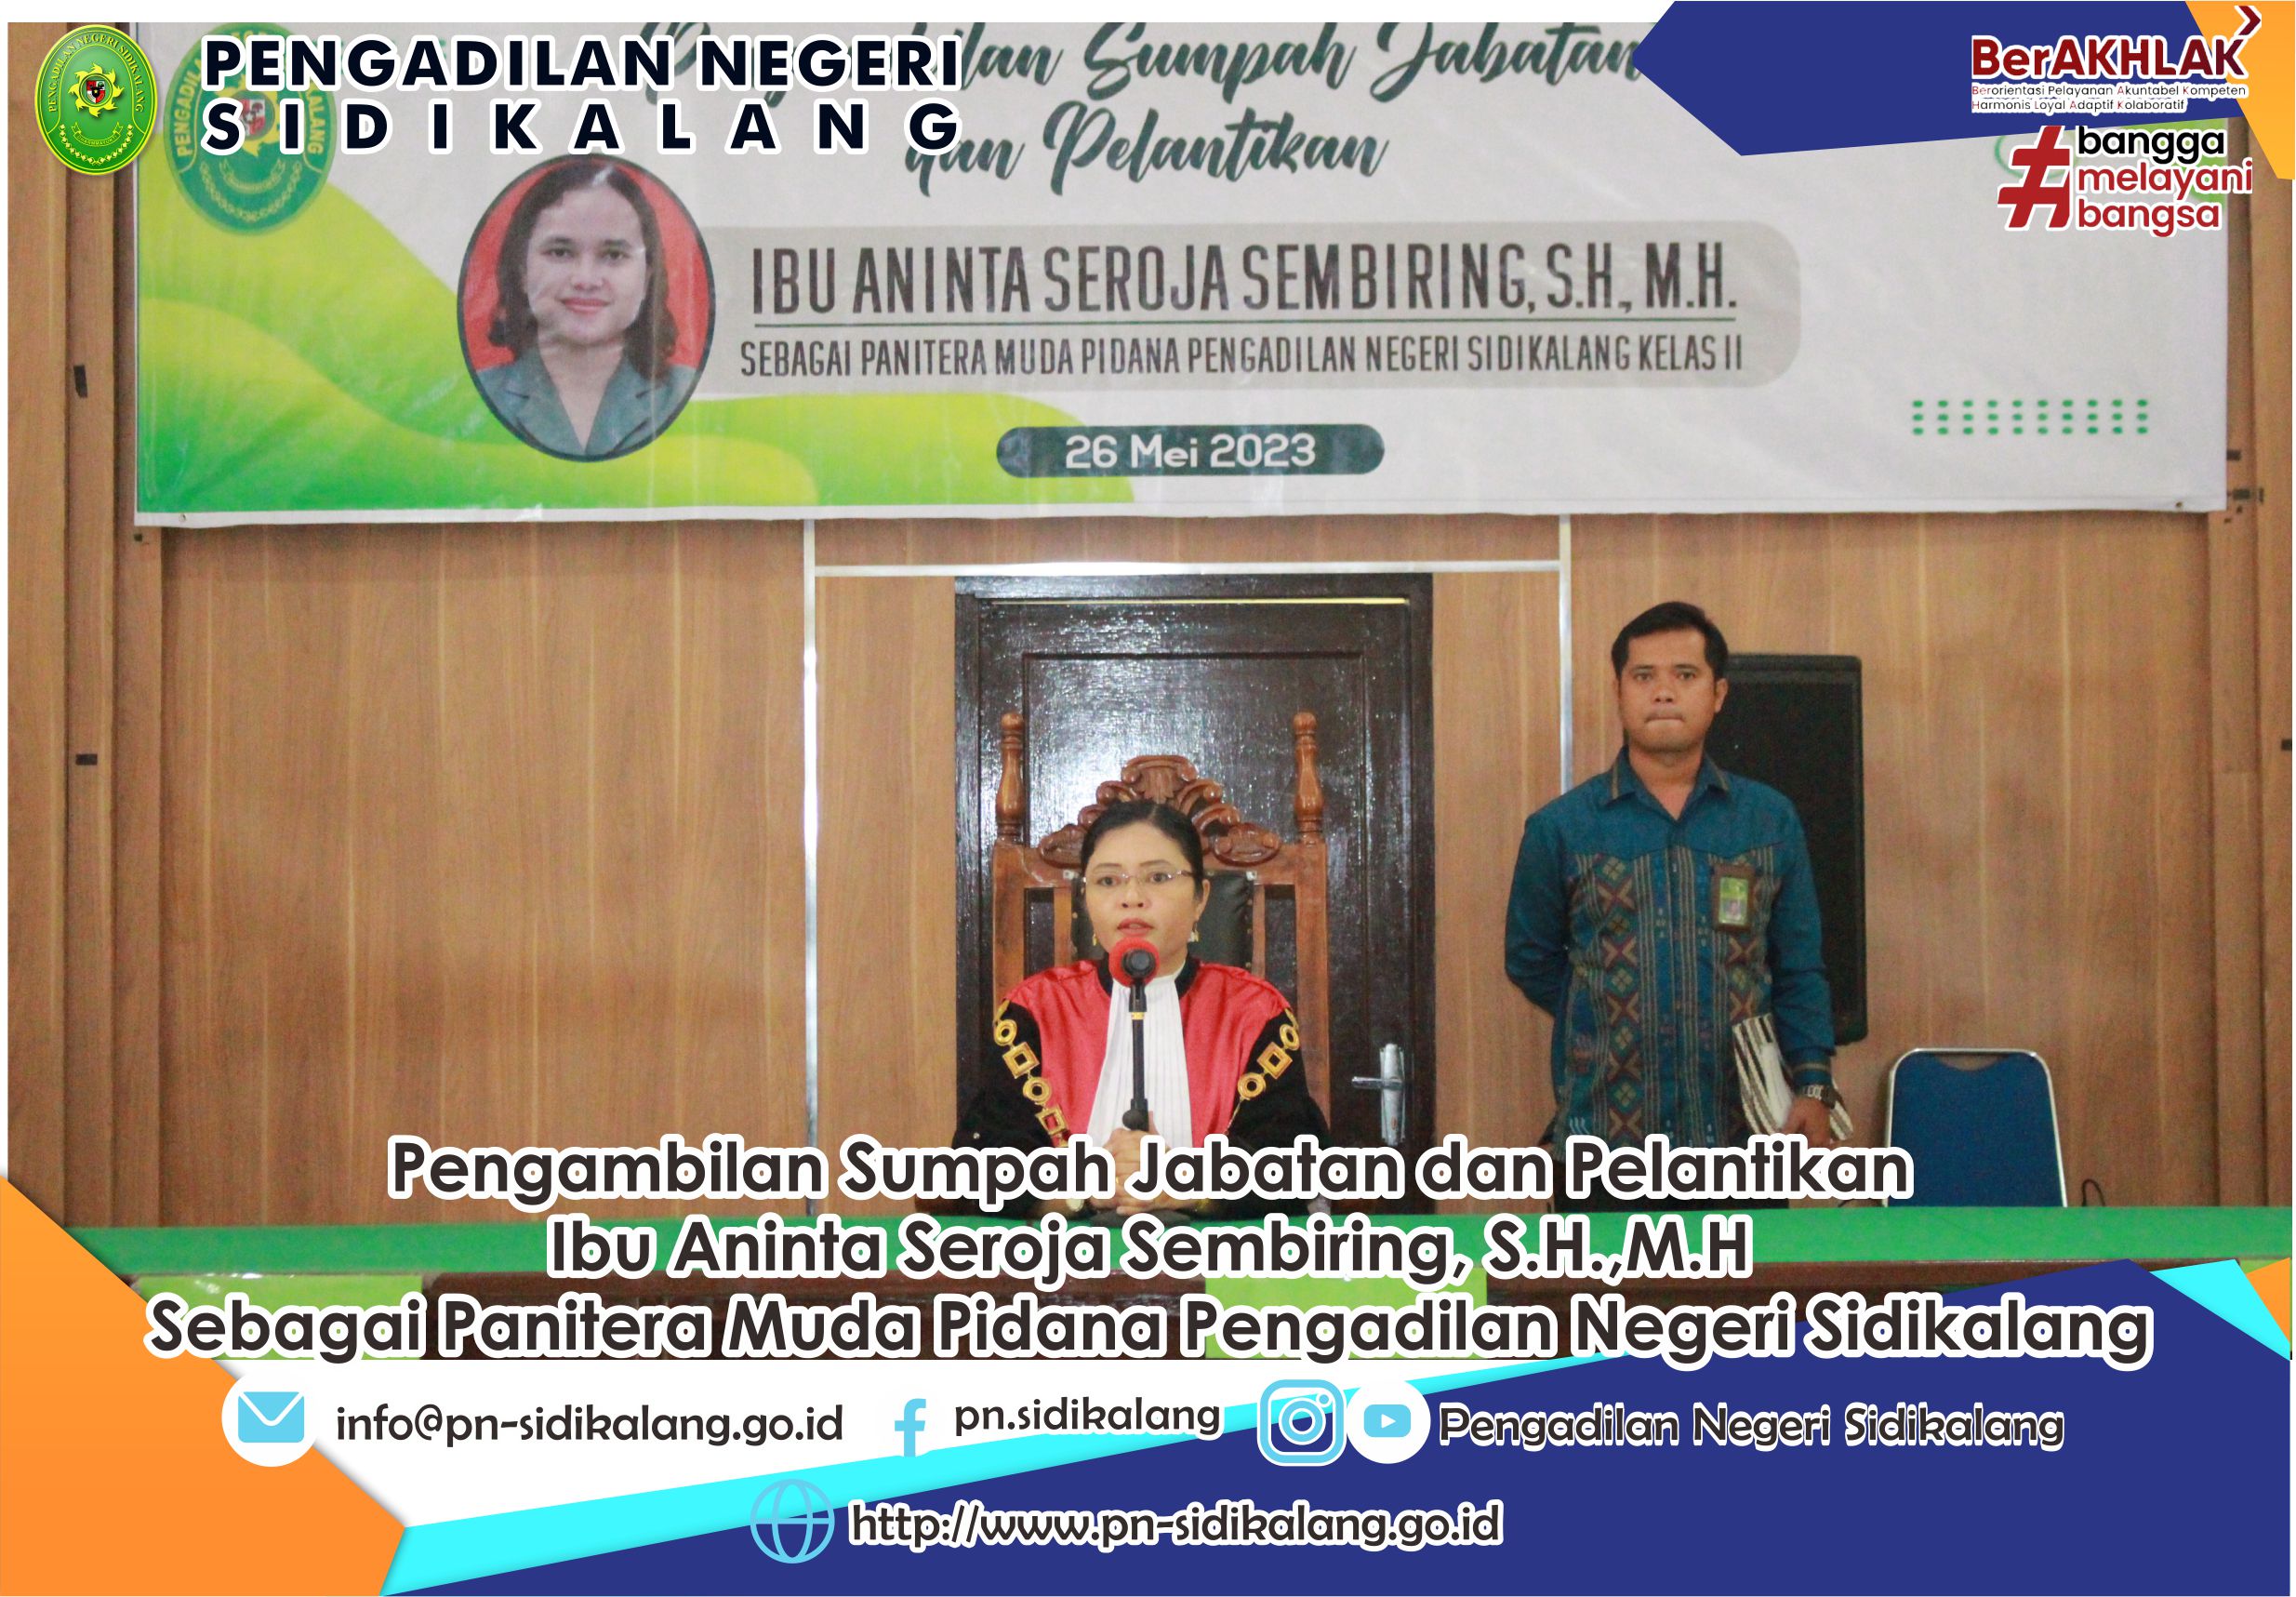 Pengambilan Sumpah Janji dan Pelantikan Ibu Aninta Seroja Sembiring, S.H.,M.H sebagai Panitera Muda Pidana pada Pengadilan Negeri Sidikalang.